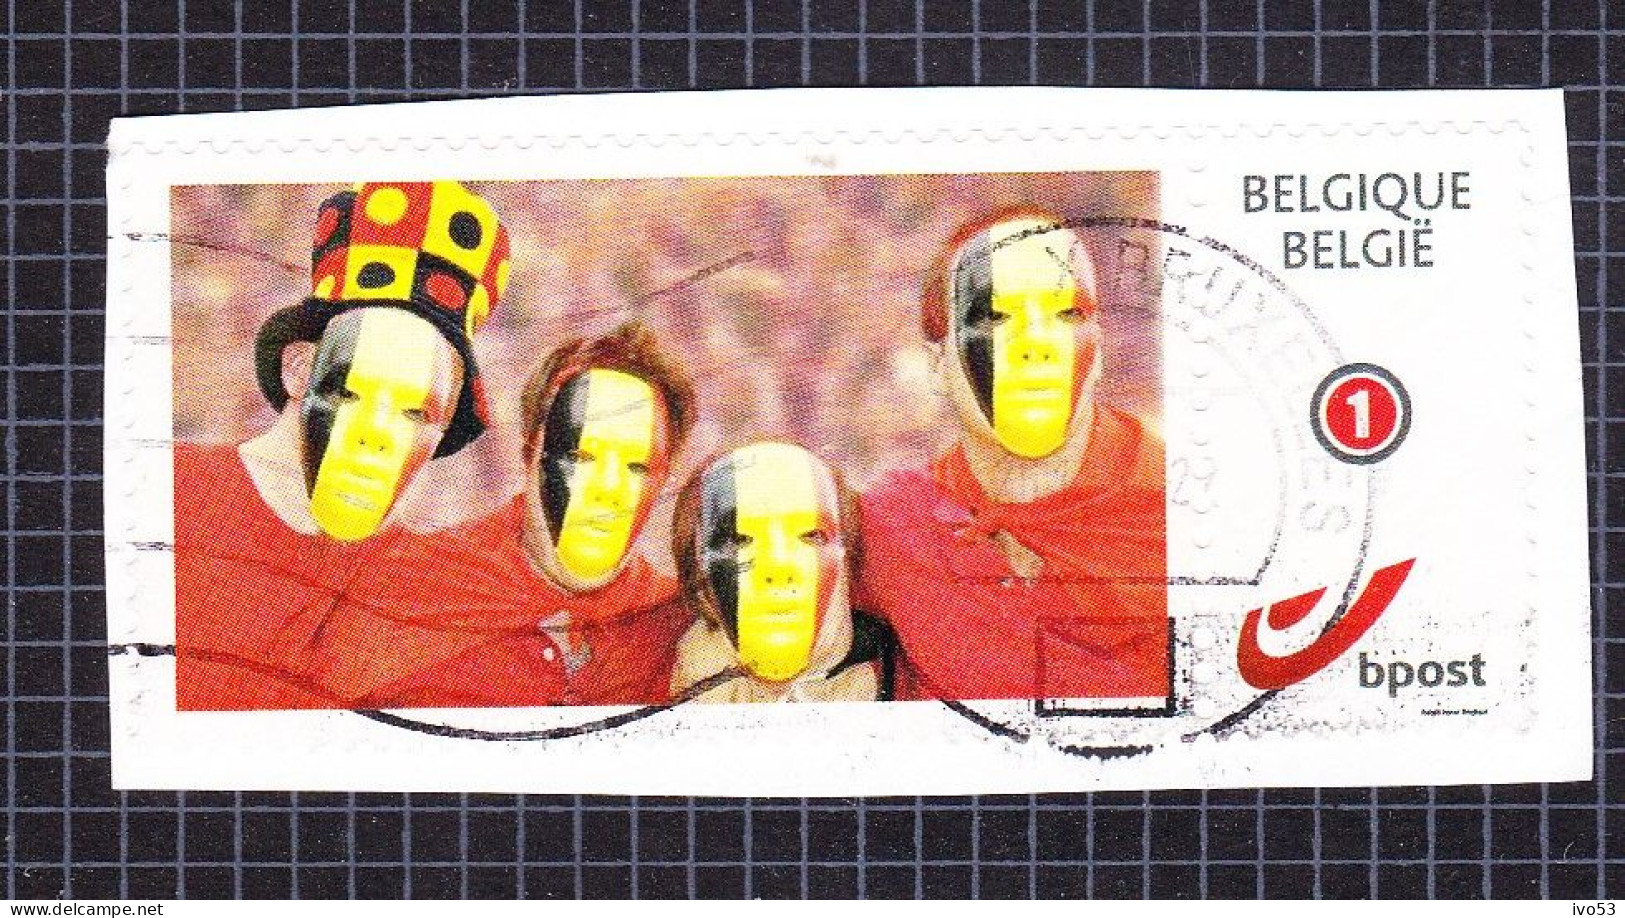 2011 Nr 4182/83 Duo-stamp / My Stamp,gestempeld Op Fragment. - Gebruikt